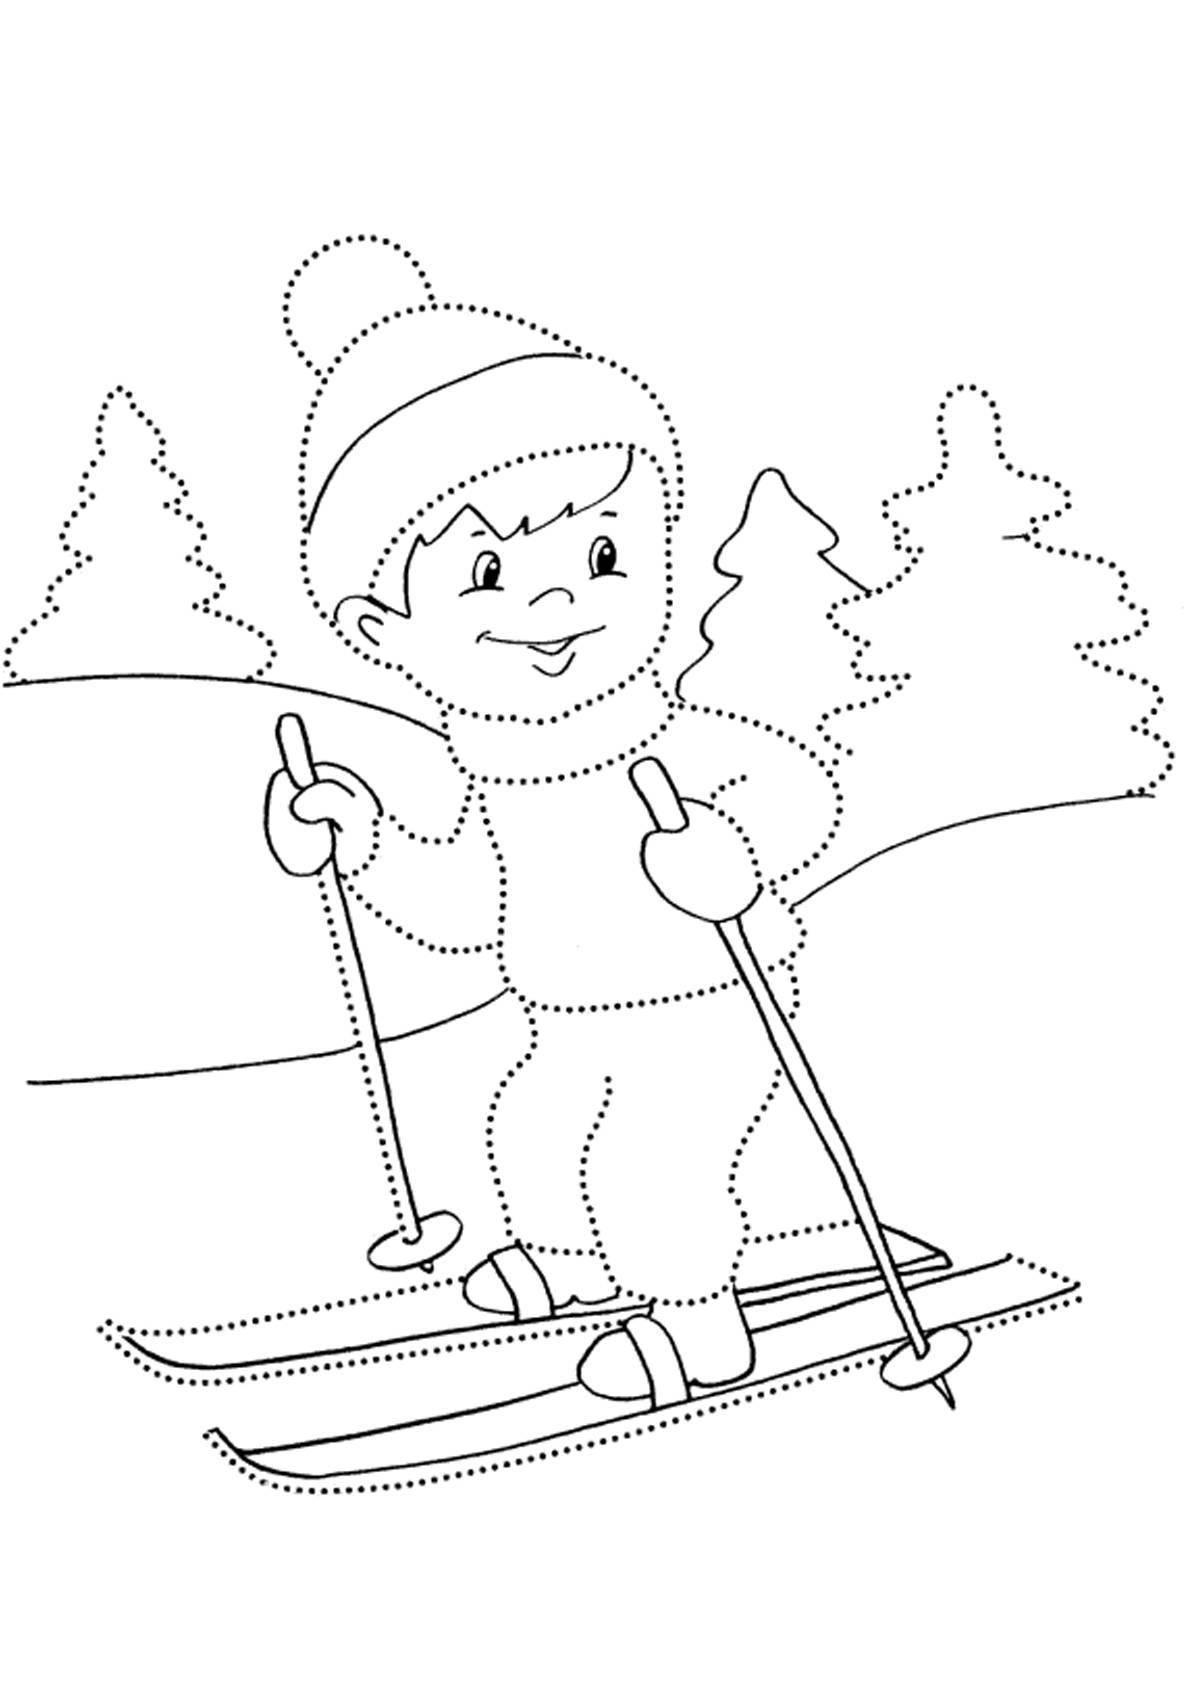 Изысканная раскраска для детей о зимних видах спорта